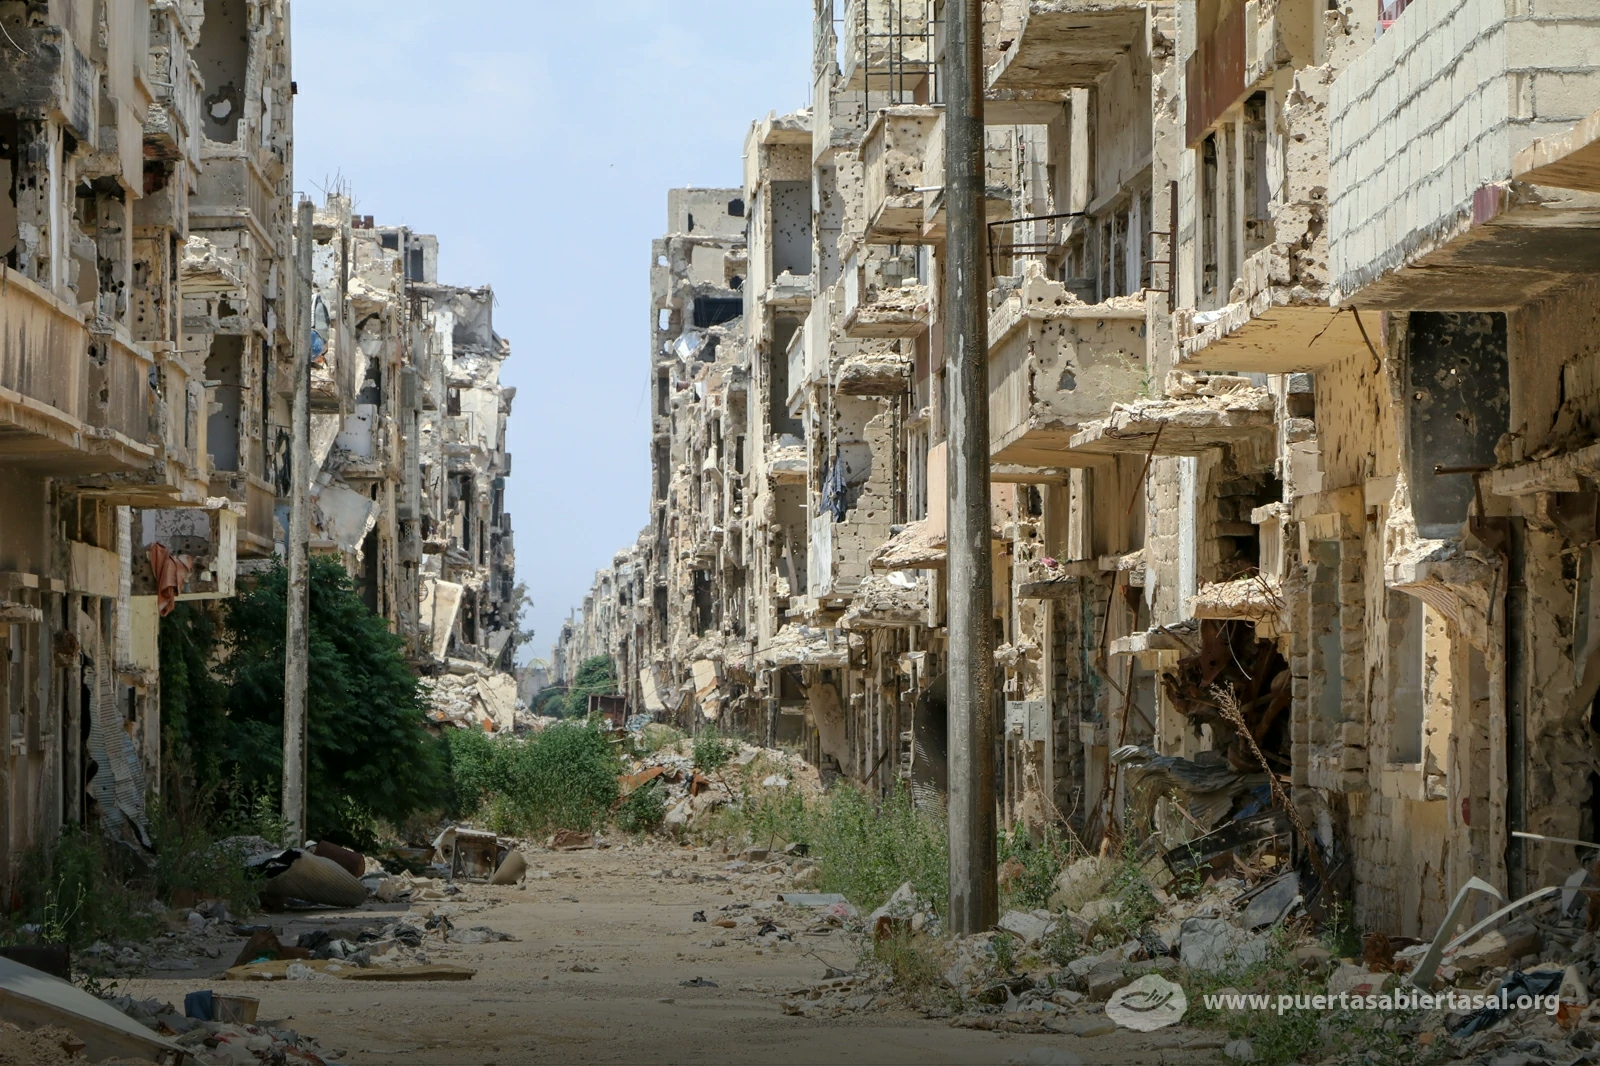 Siria vive una guerra civil que ha dañado al país hace años